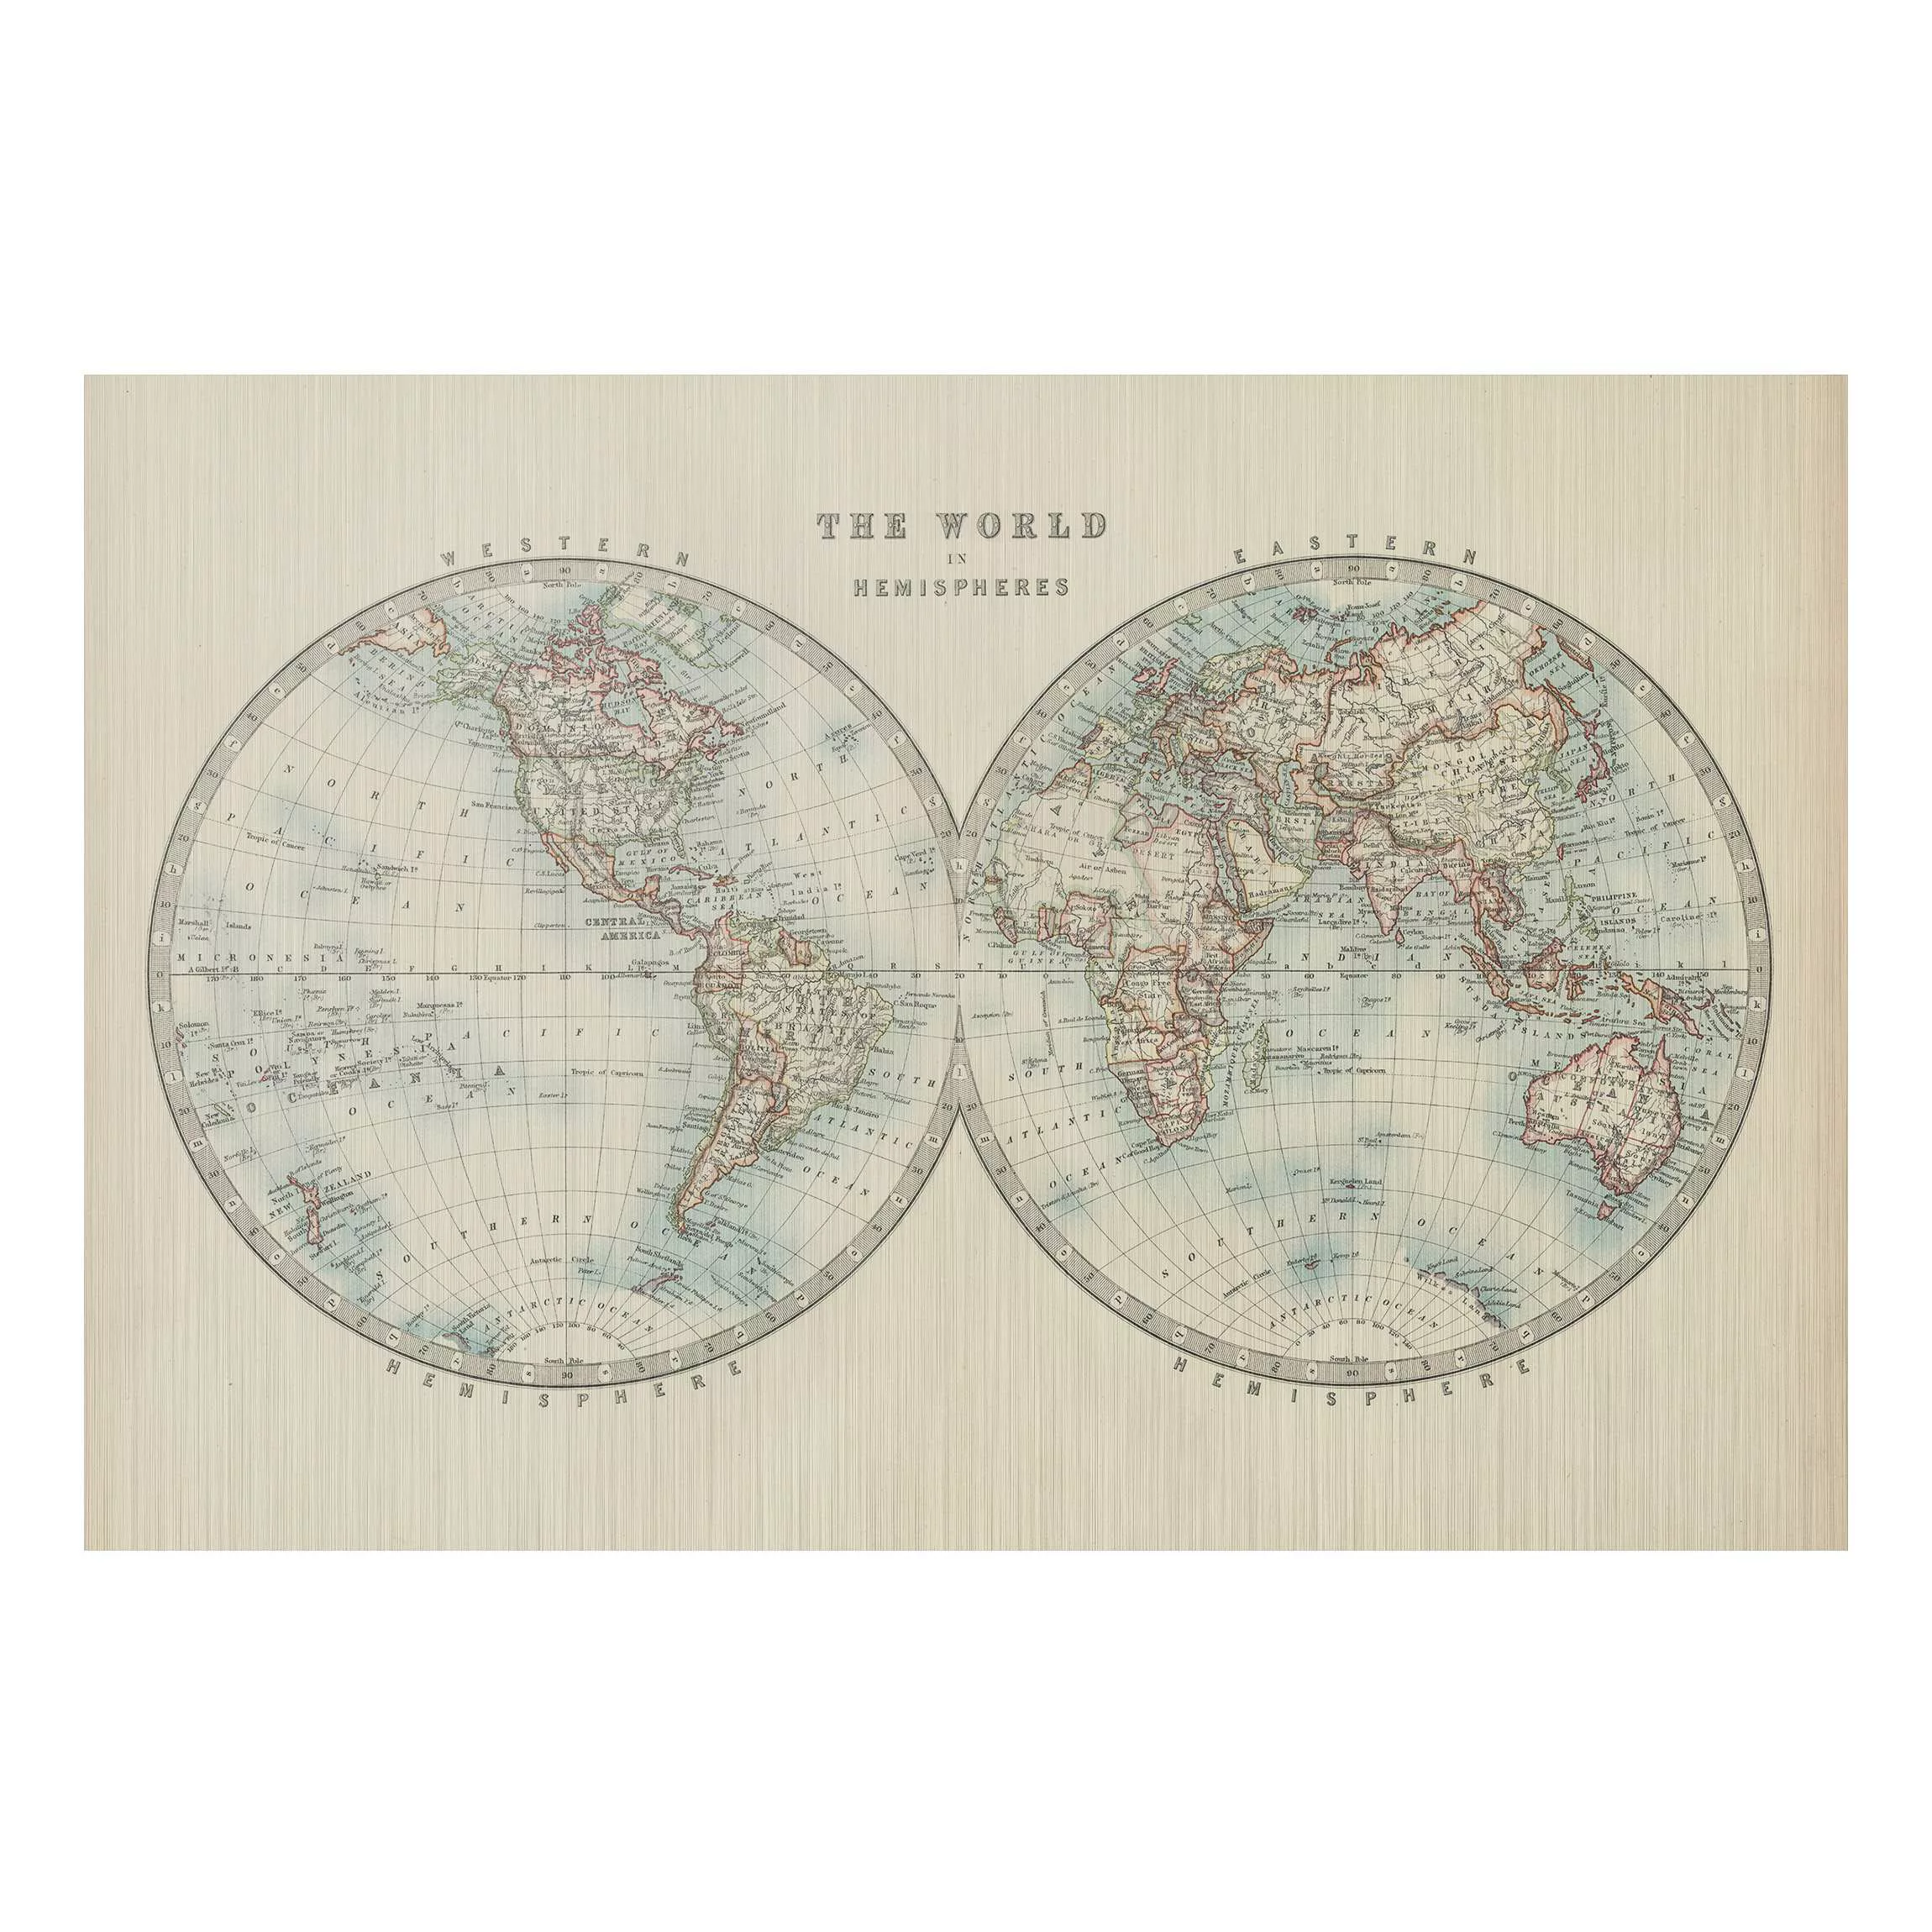 Alu-Dibond Bild Vintage Weltkarte Die zwei Hemispheren günstig online kaufen